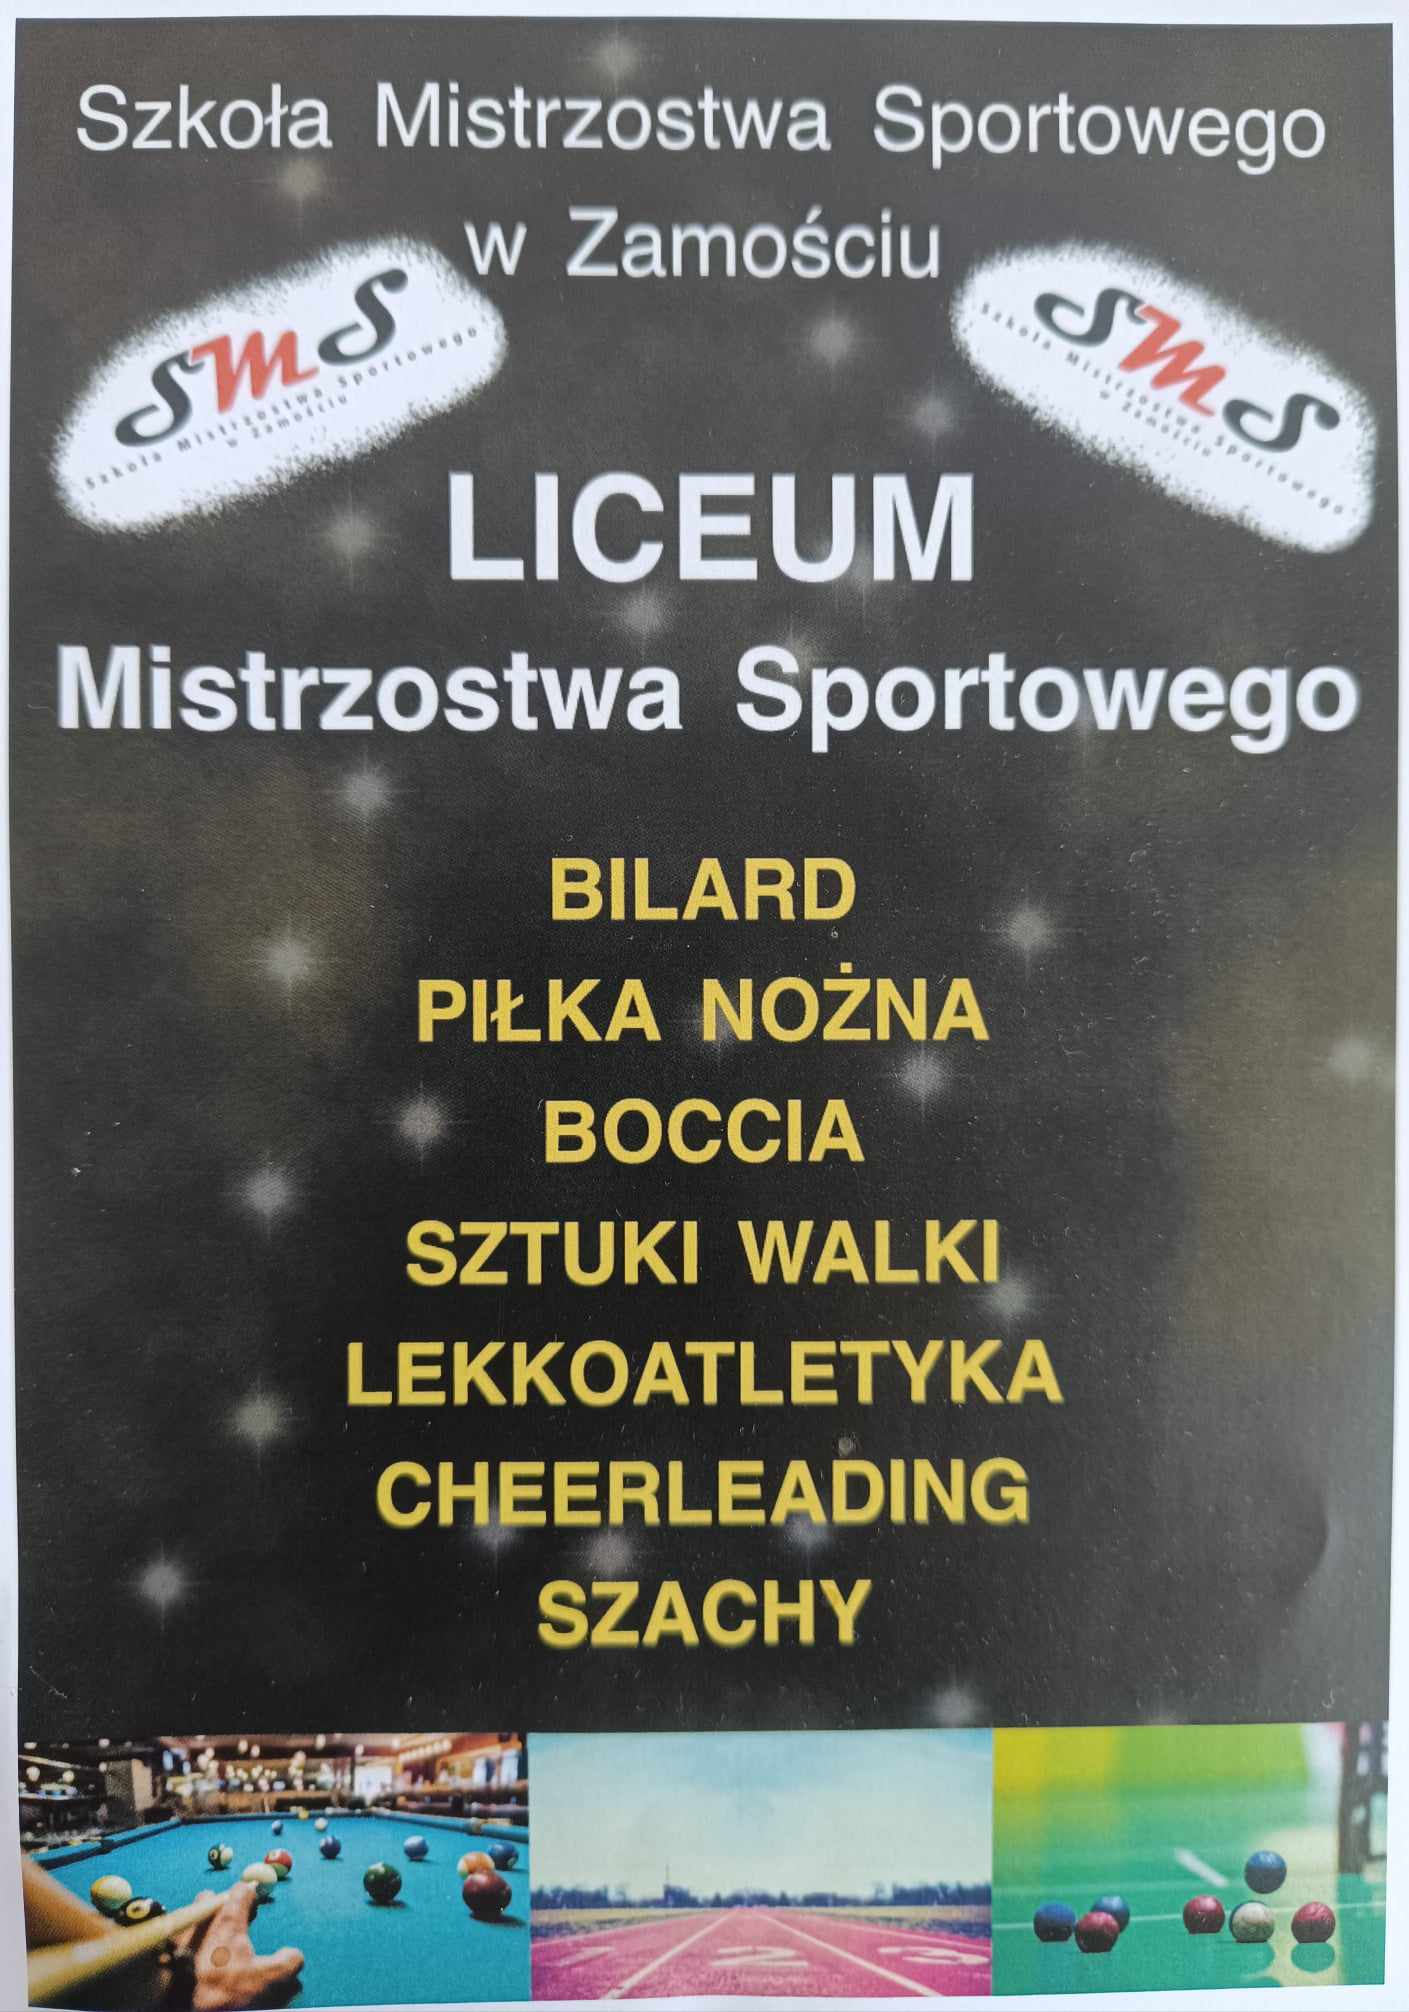 Szkoła Mistrzostwa Sportowego Lublin